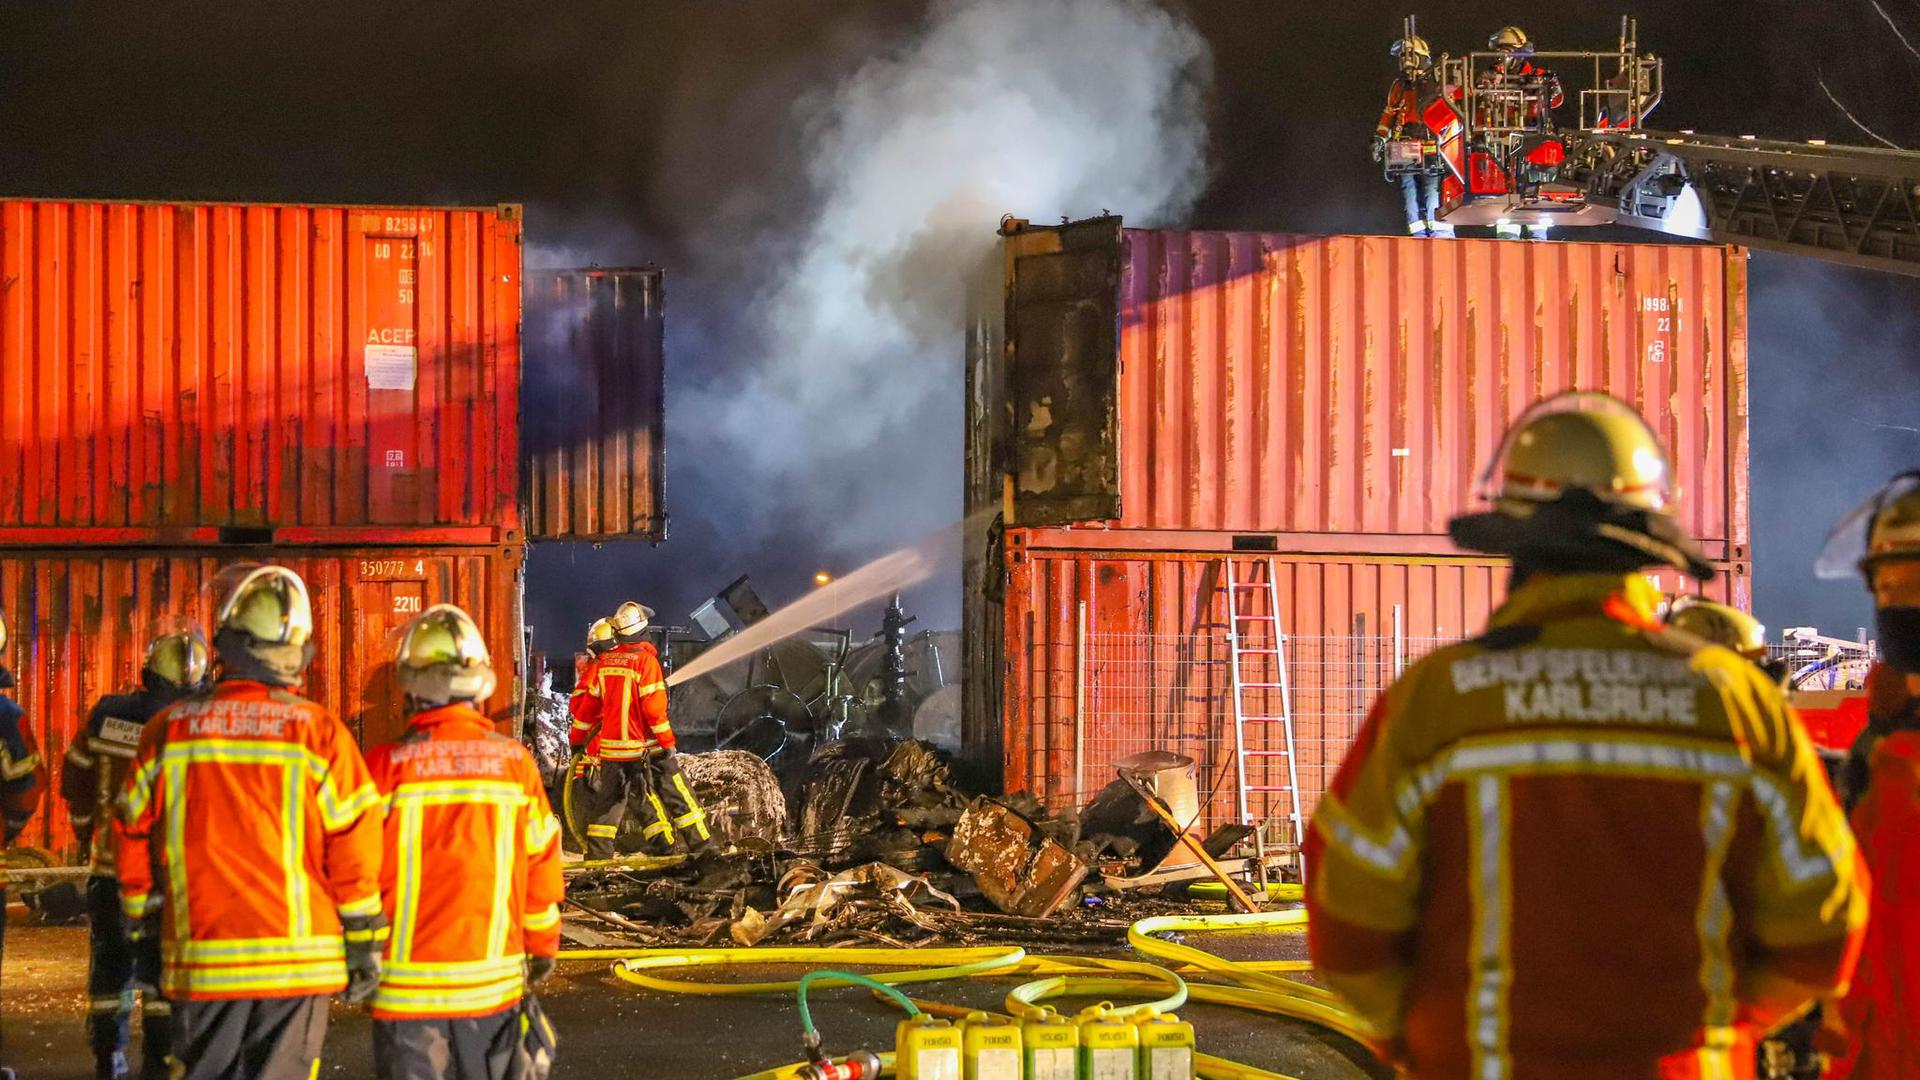 Einsatzkräfte der Feuerwehr löschen in Brand geratene Container.